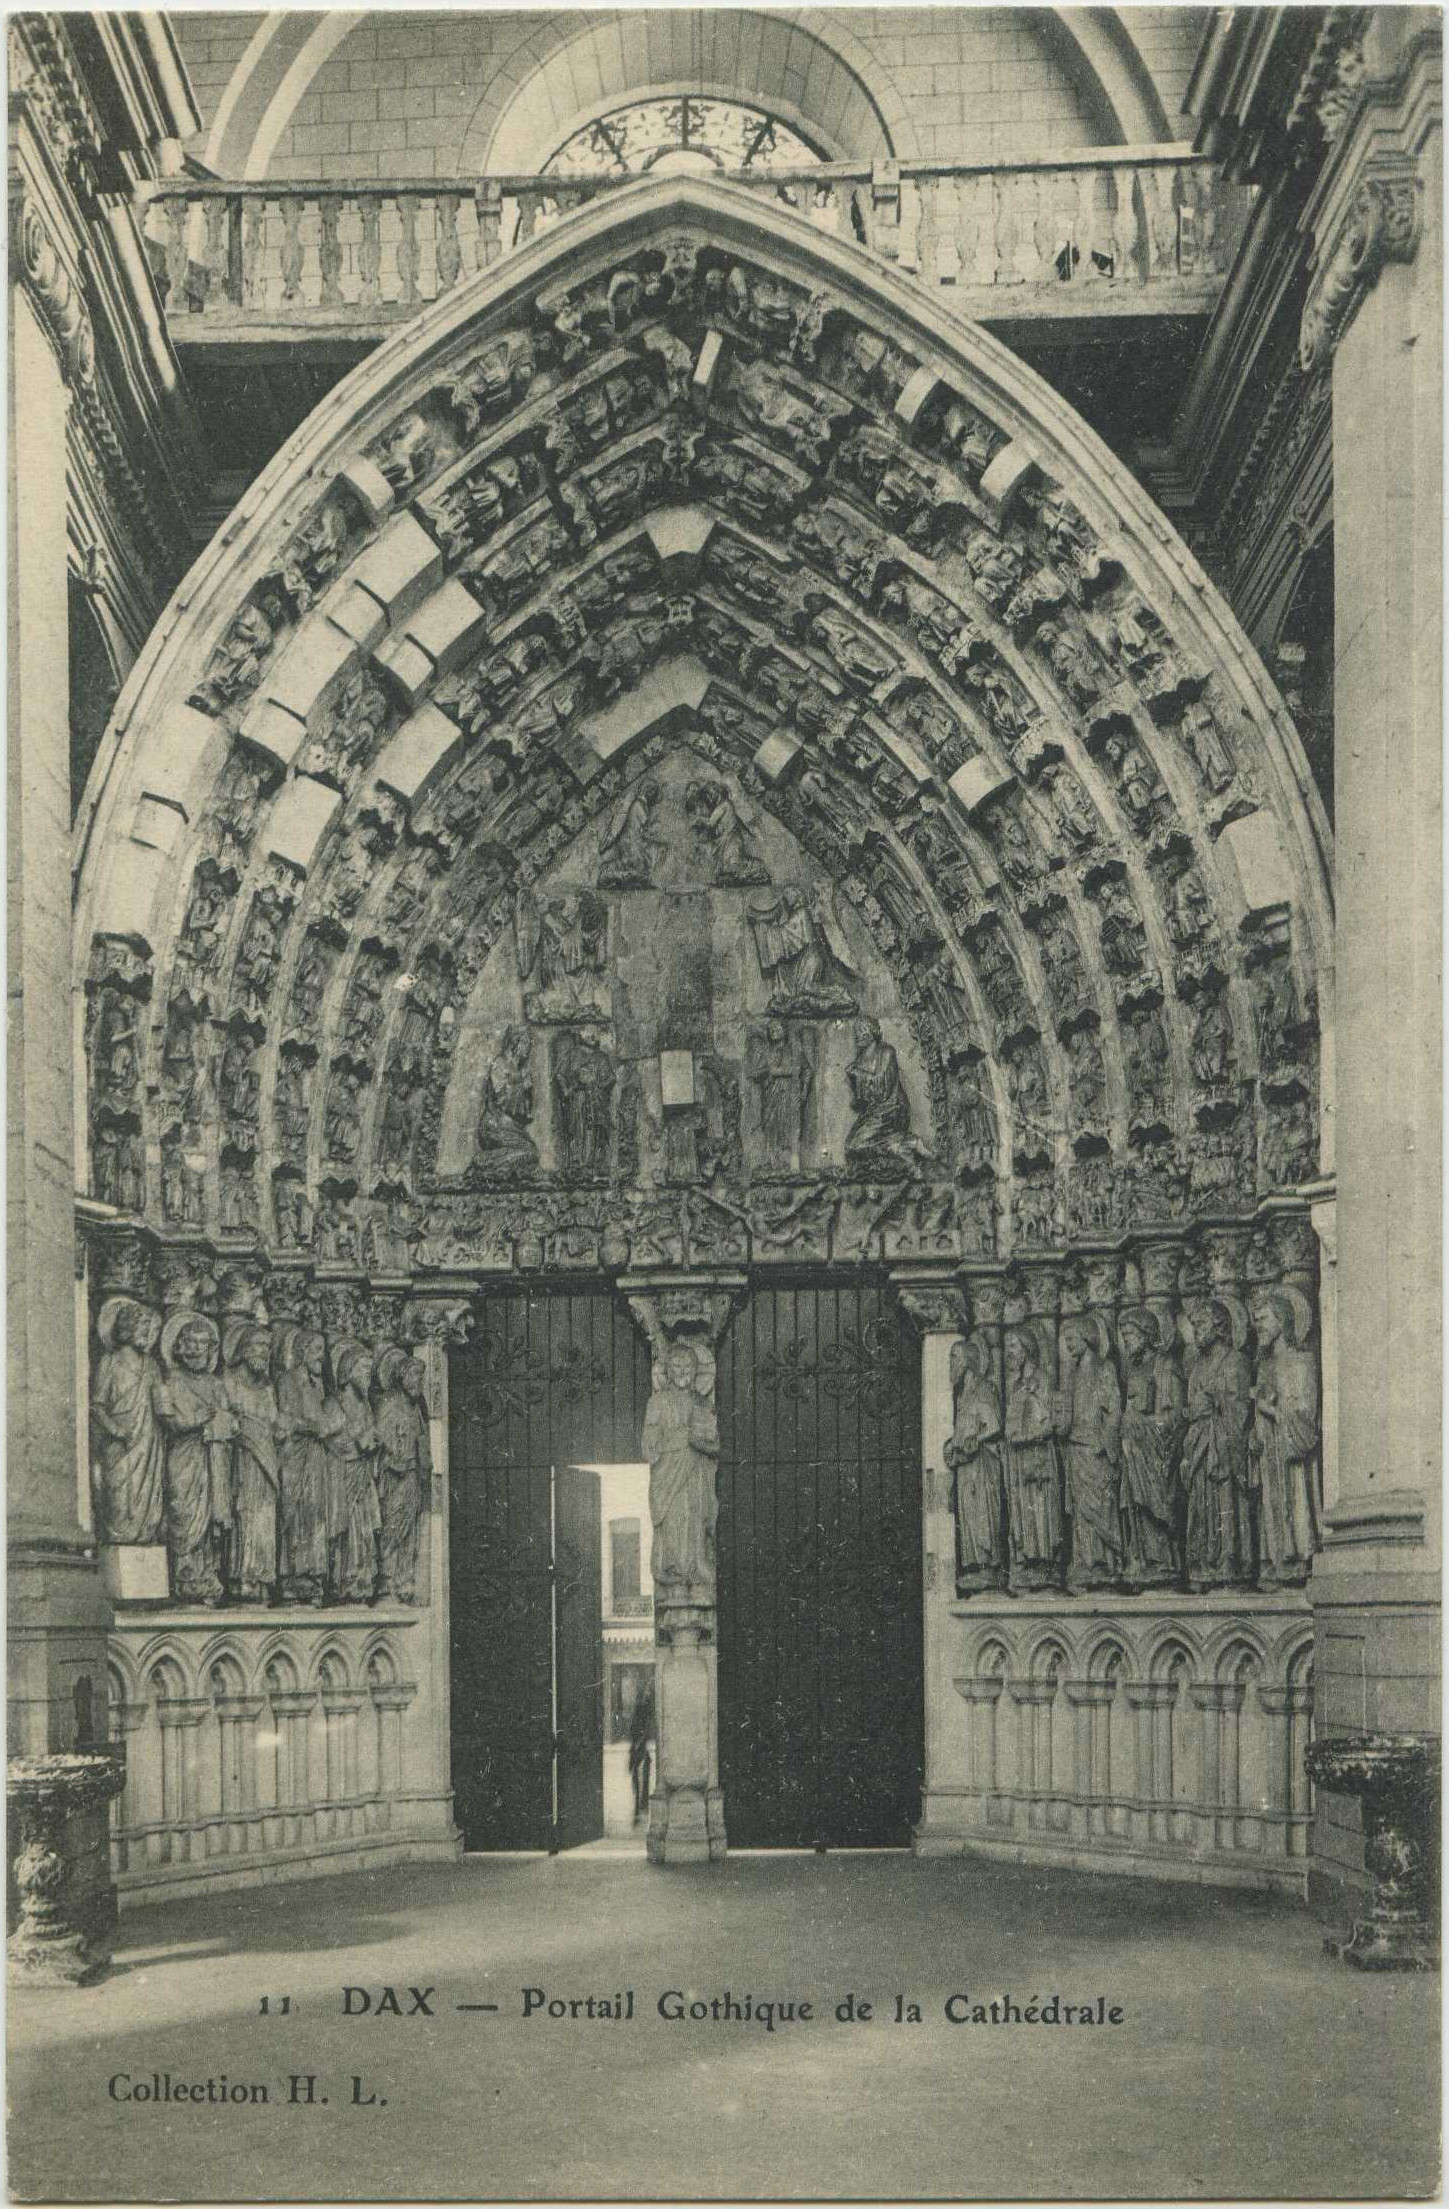 Dax - Portail Gothique de la Cathédrale